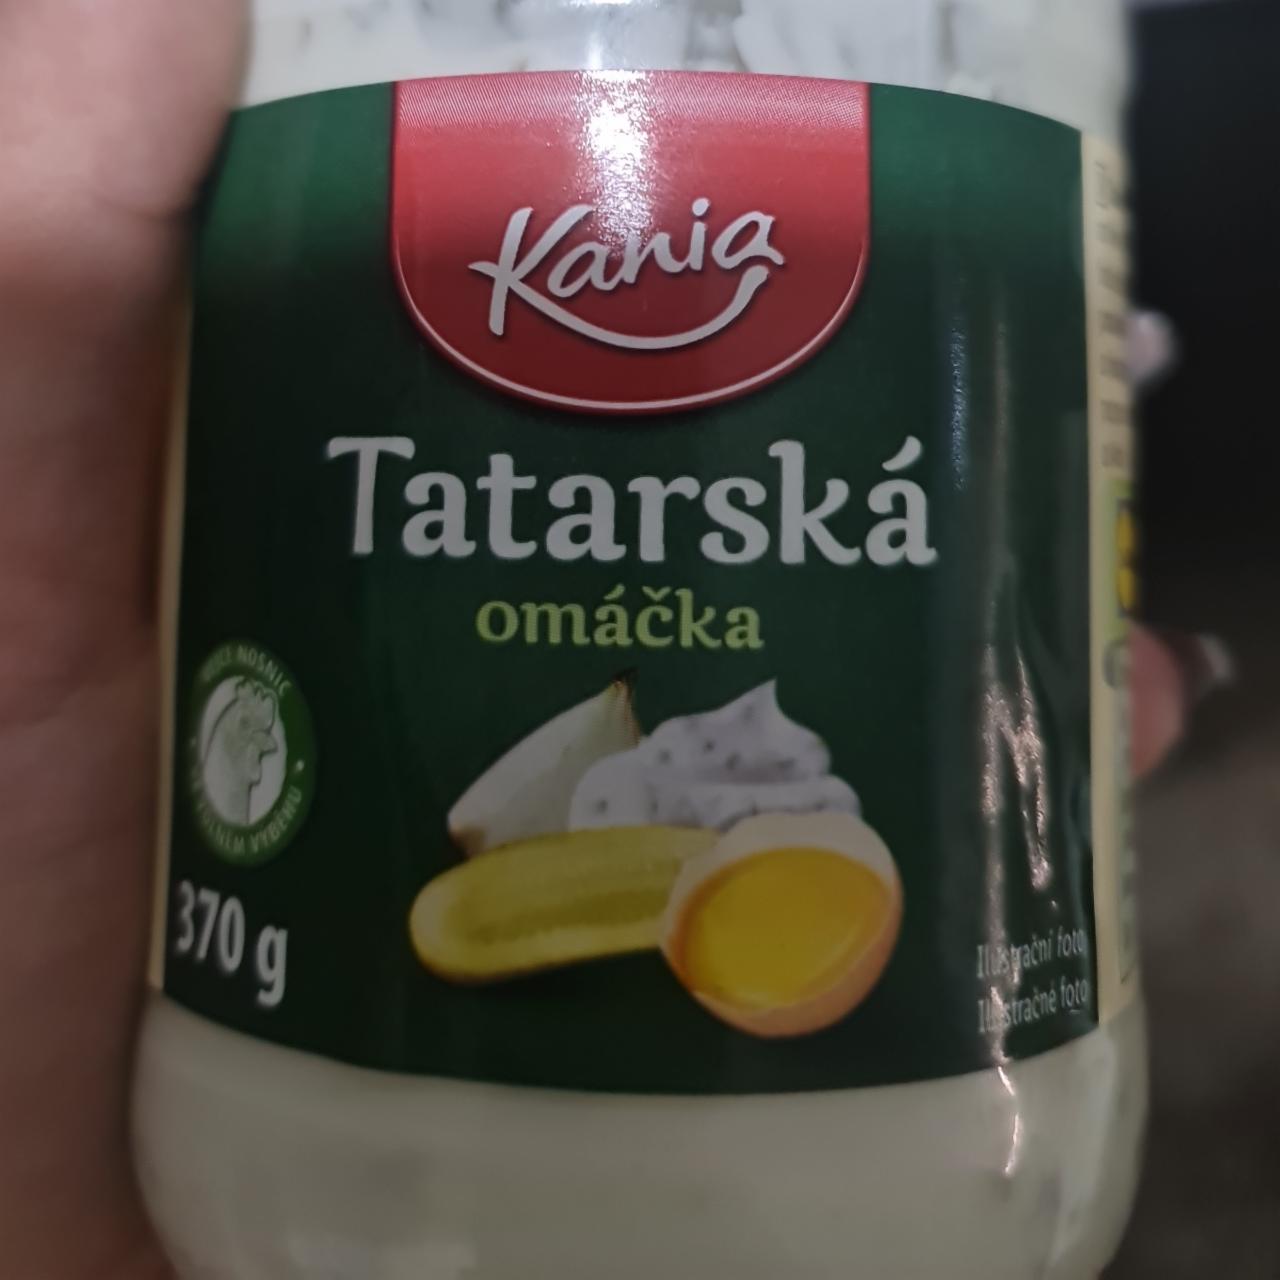 Képek - Tatarská omáčka Kania